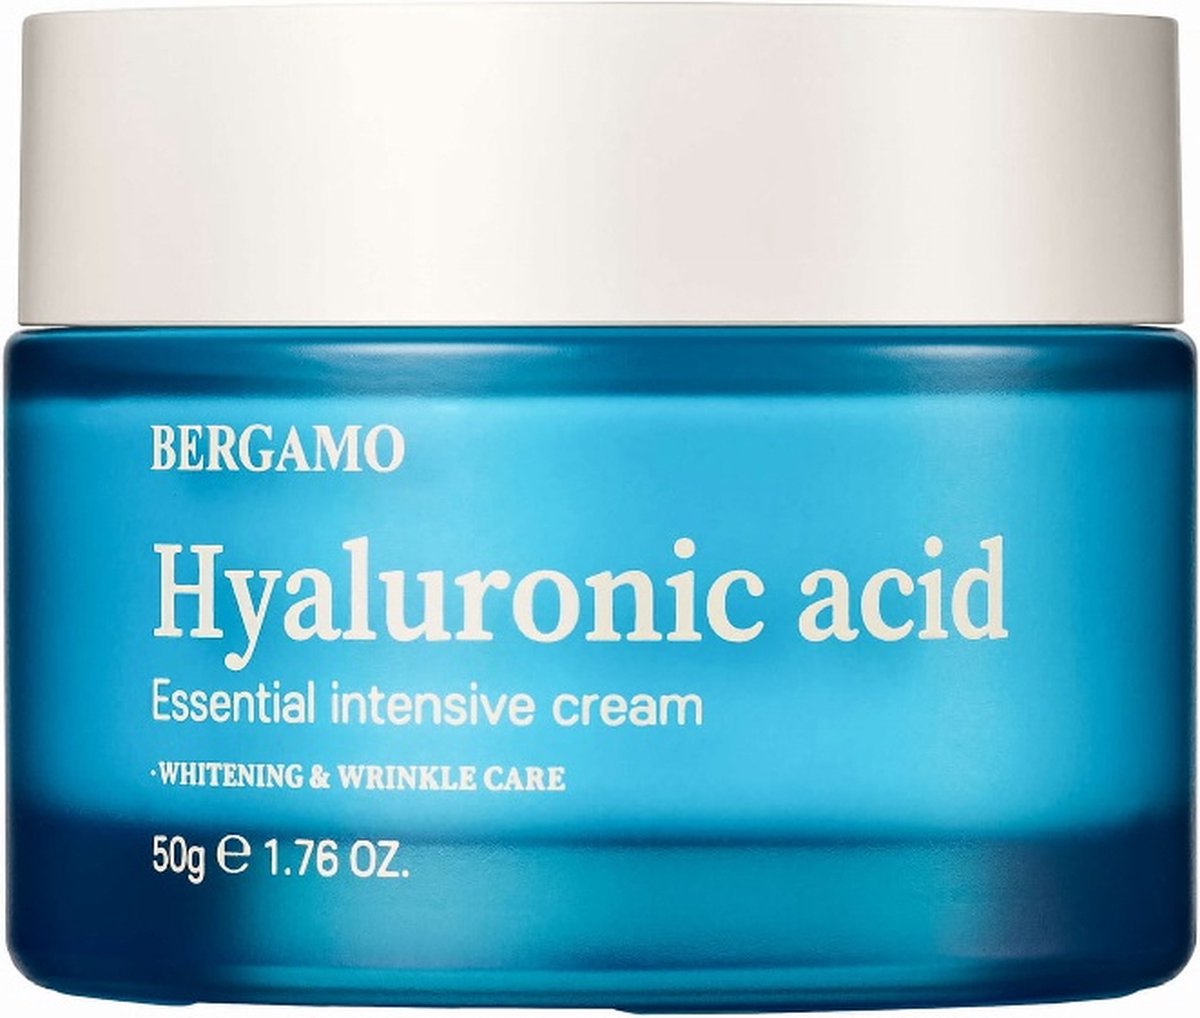 Hyaluronic Acid Essential Intensive Cream hydraterende gezichtscrème met hyaluronzuur 50g